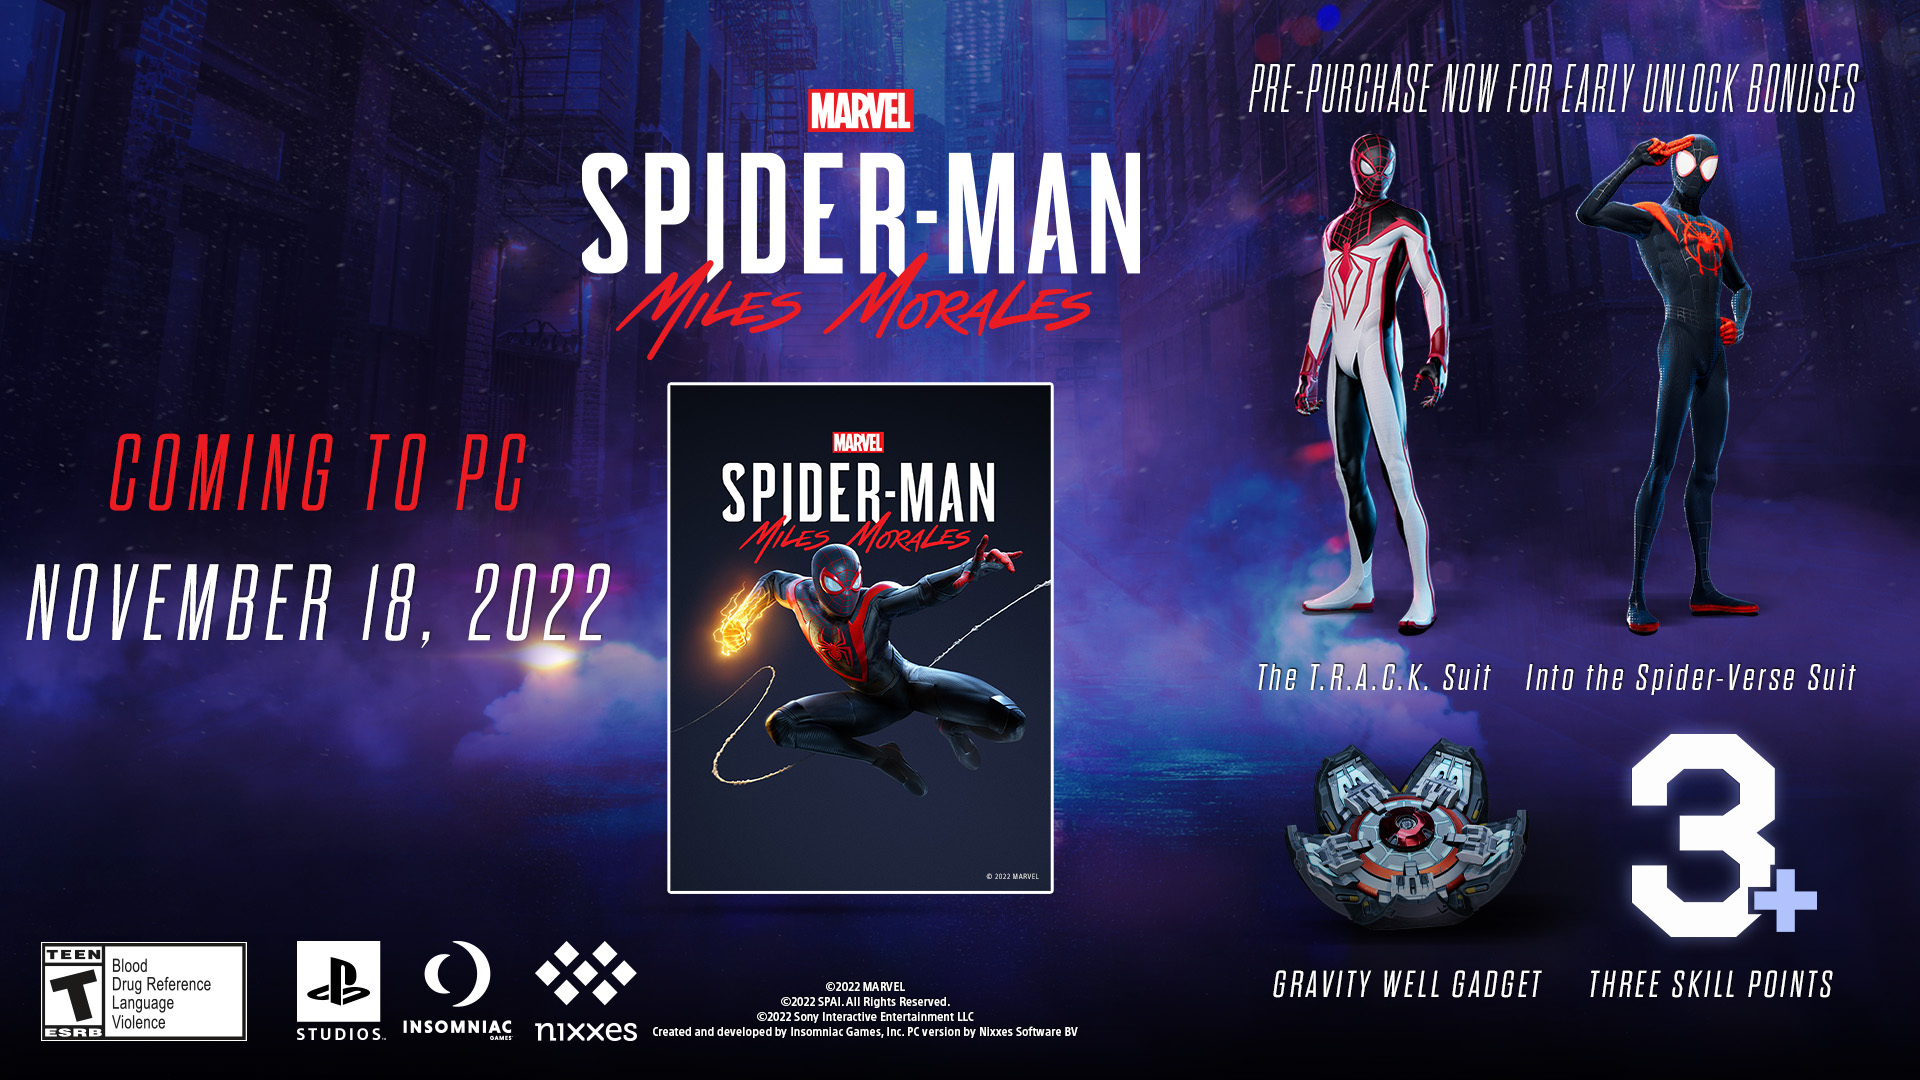 《漫威蜘蛛人邁爾斯·莫拉萊斯》將於11月18日登錄PC